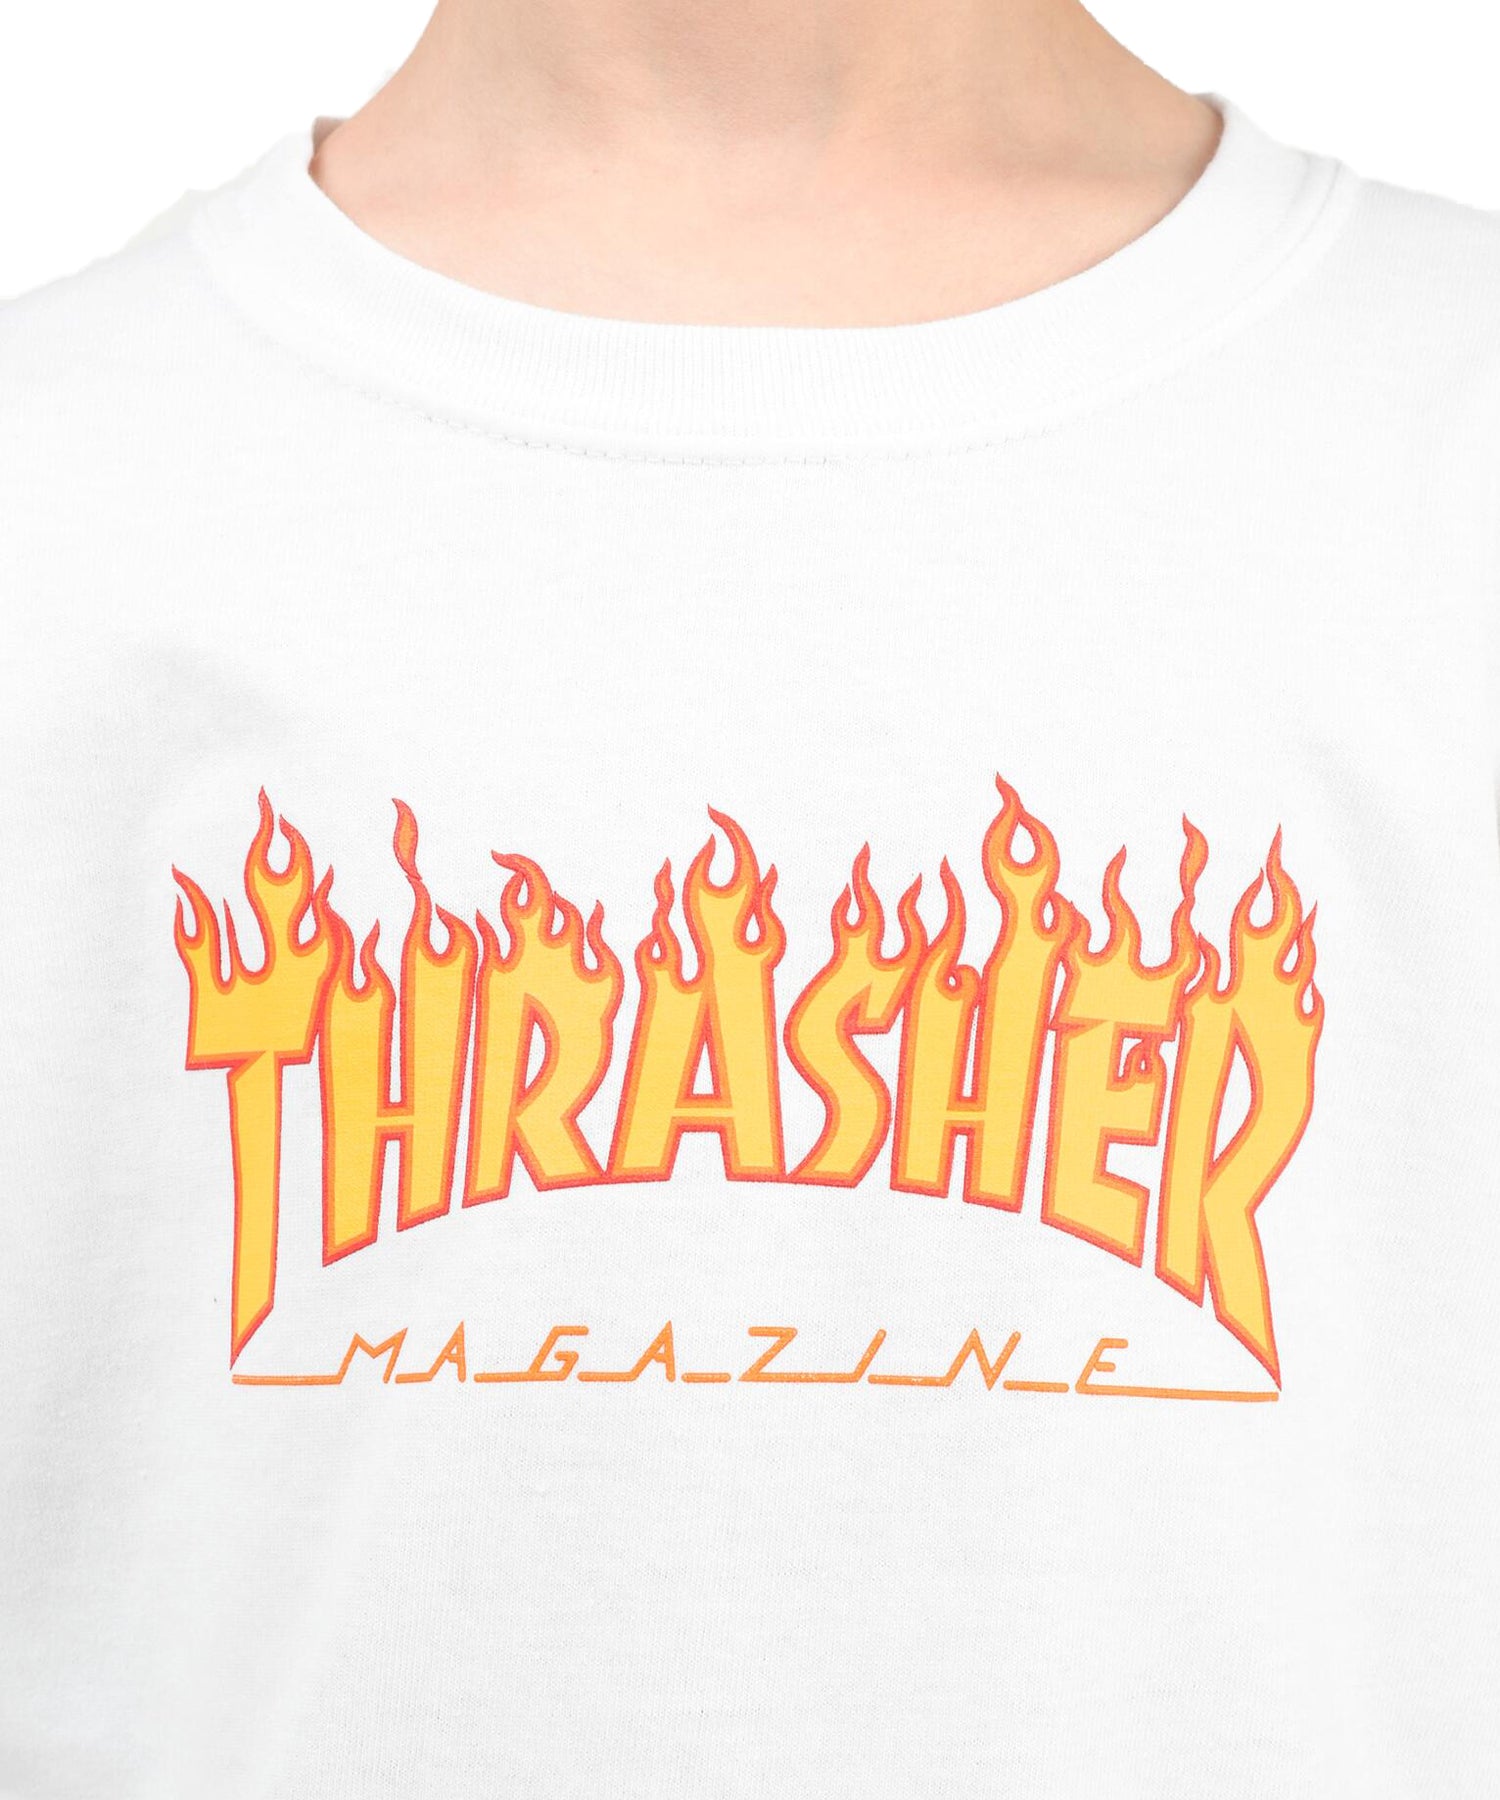 thrasher-t-shirts-flame-kids-whte camiseta blanca para niños/as de Thrasher-100% algodón.-logo thrasher en amarillo